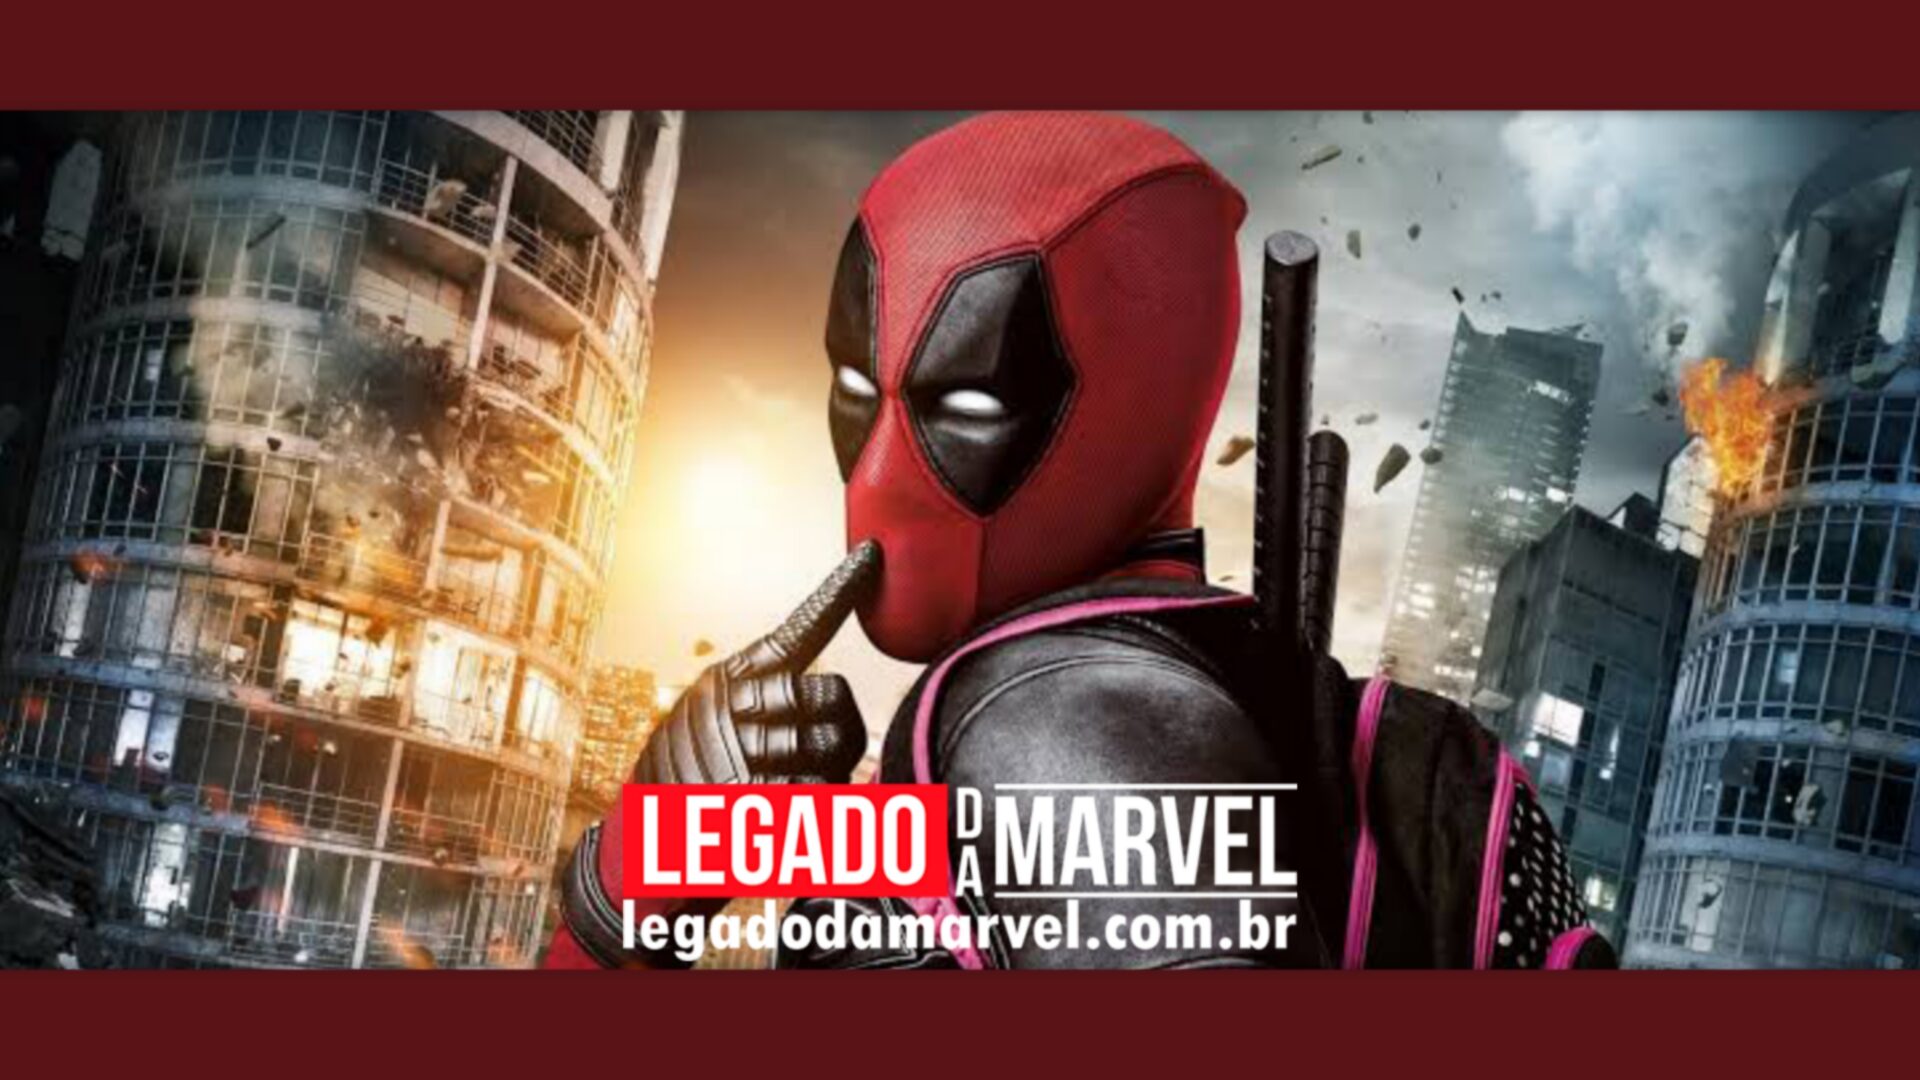  Deadpool 1 e 2, Logan e mais podem ser assistidos de graça no Star+